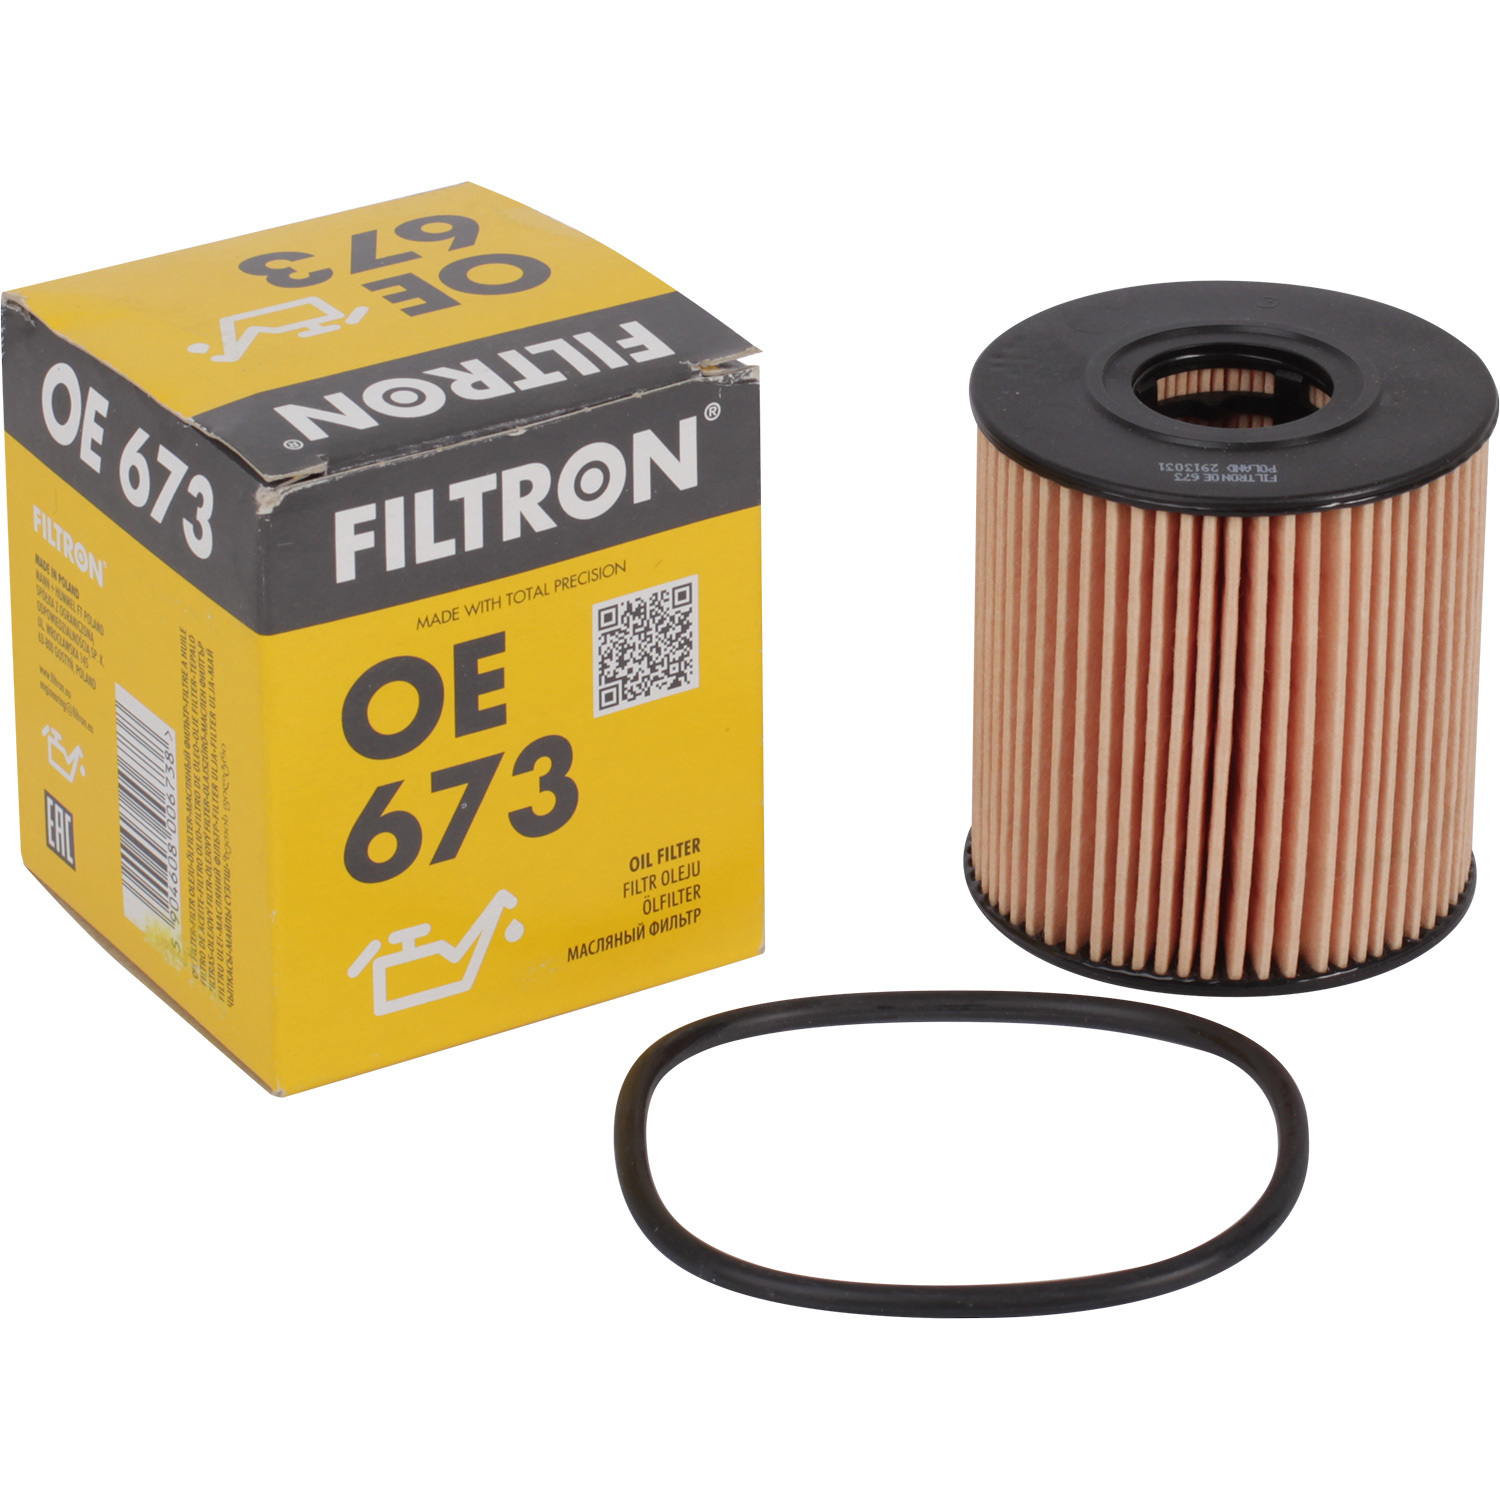 Фильтры Filtron Фильтр масляный Filtron OE673 фильтр масляный filtron op629 1 ford volvo